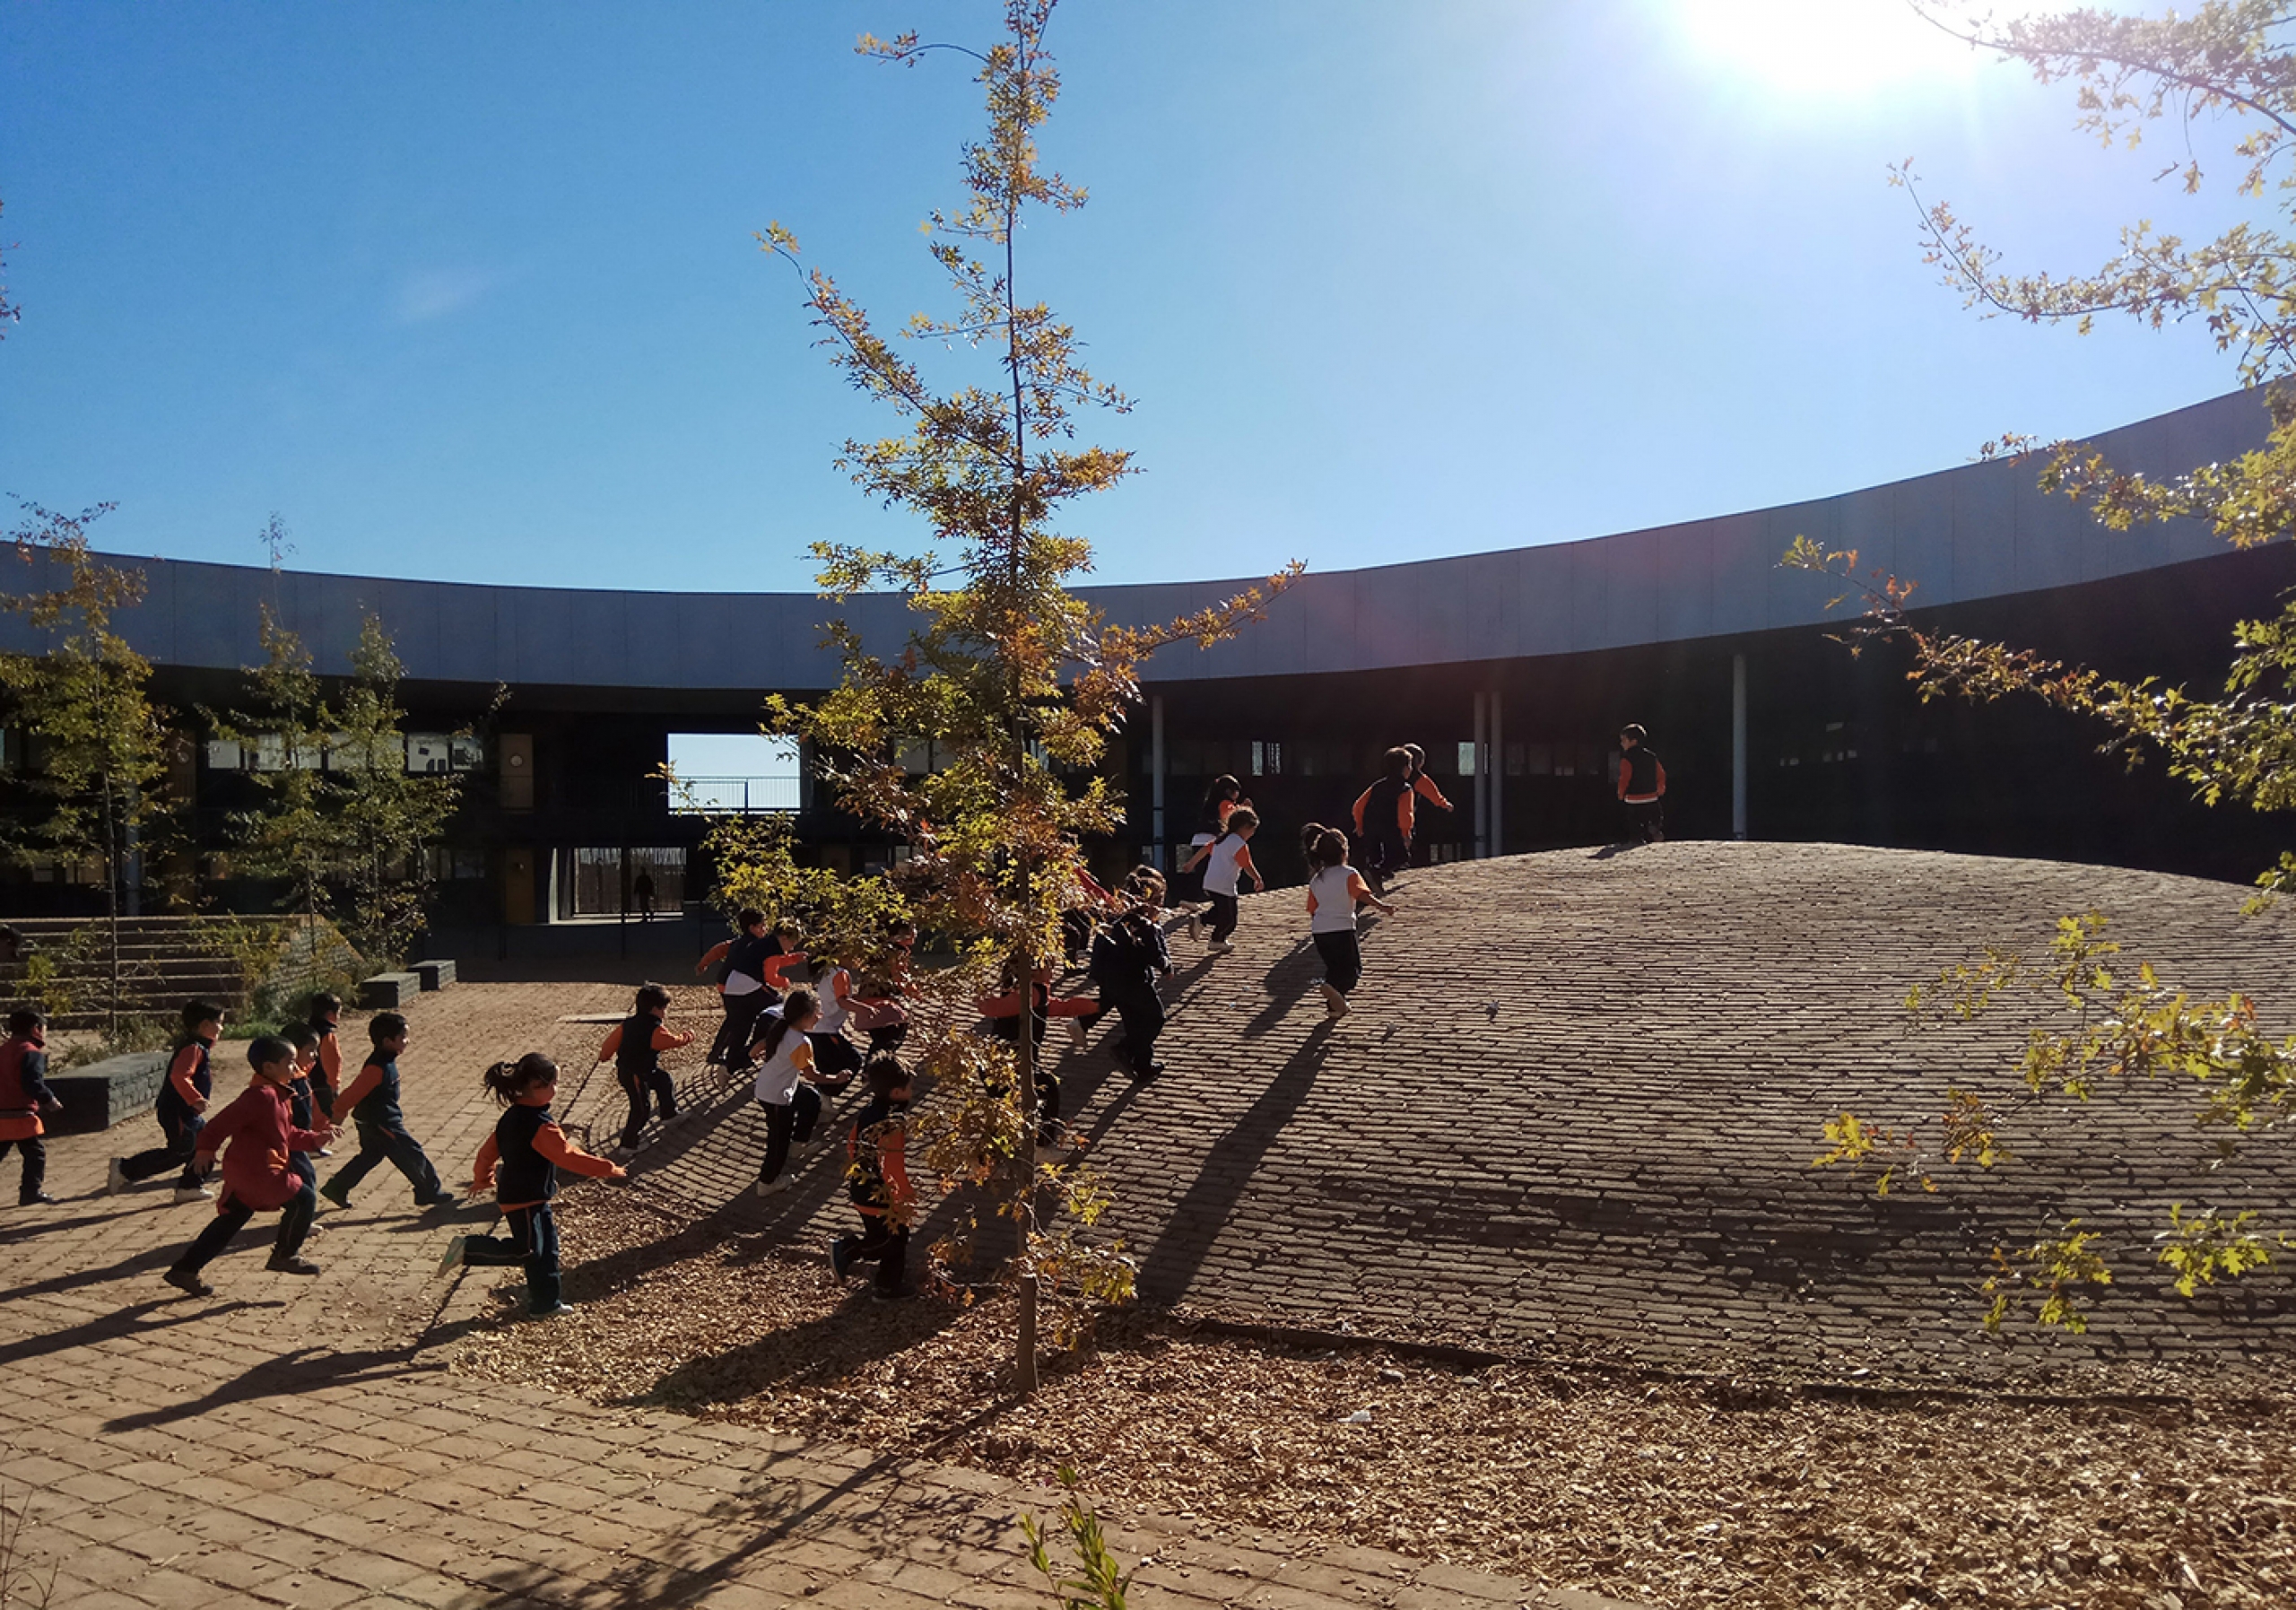 Patio Vivo resignifica los patios escolares a través de la arquitectura y el juego